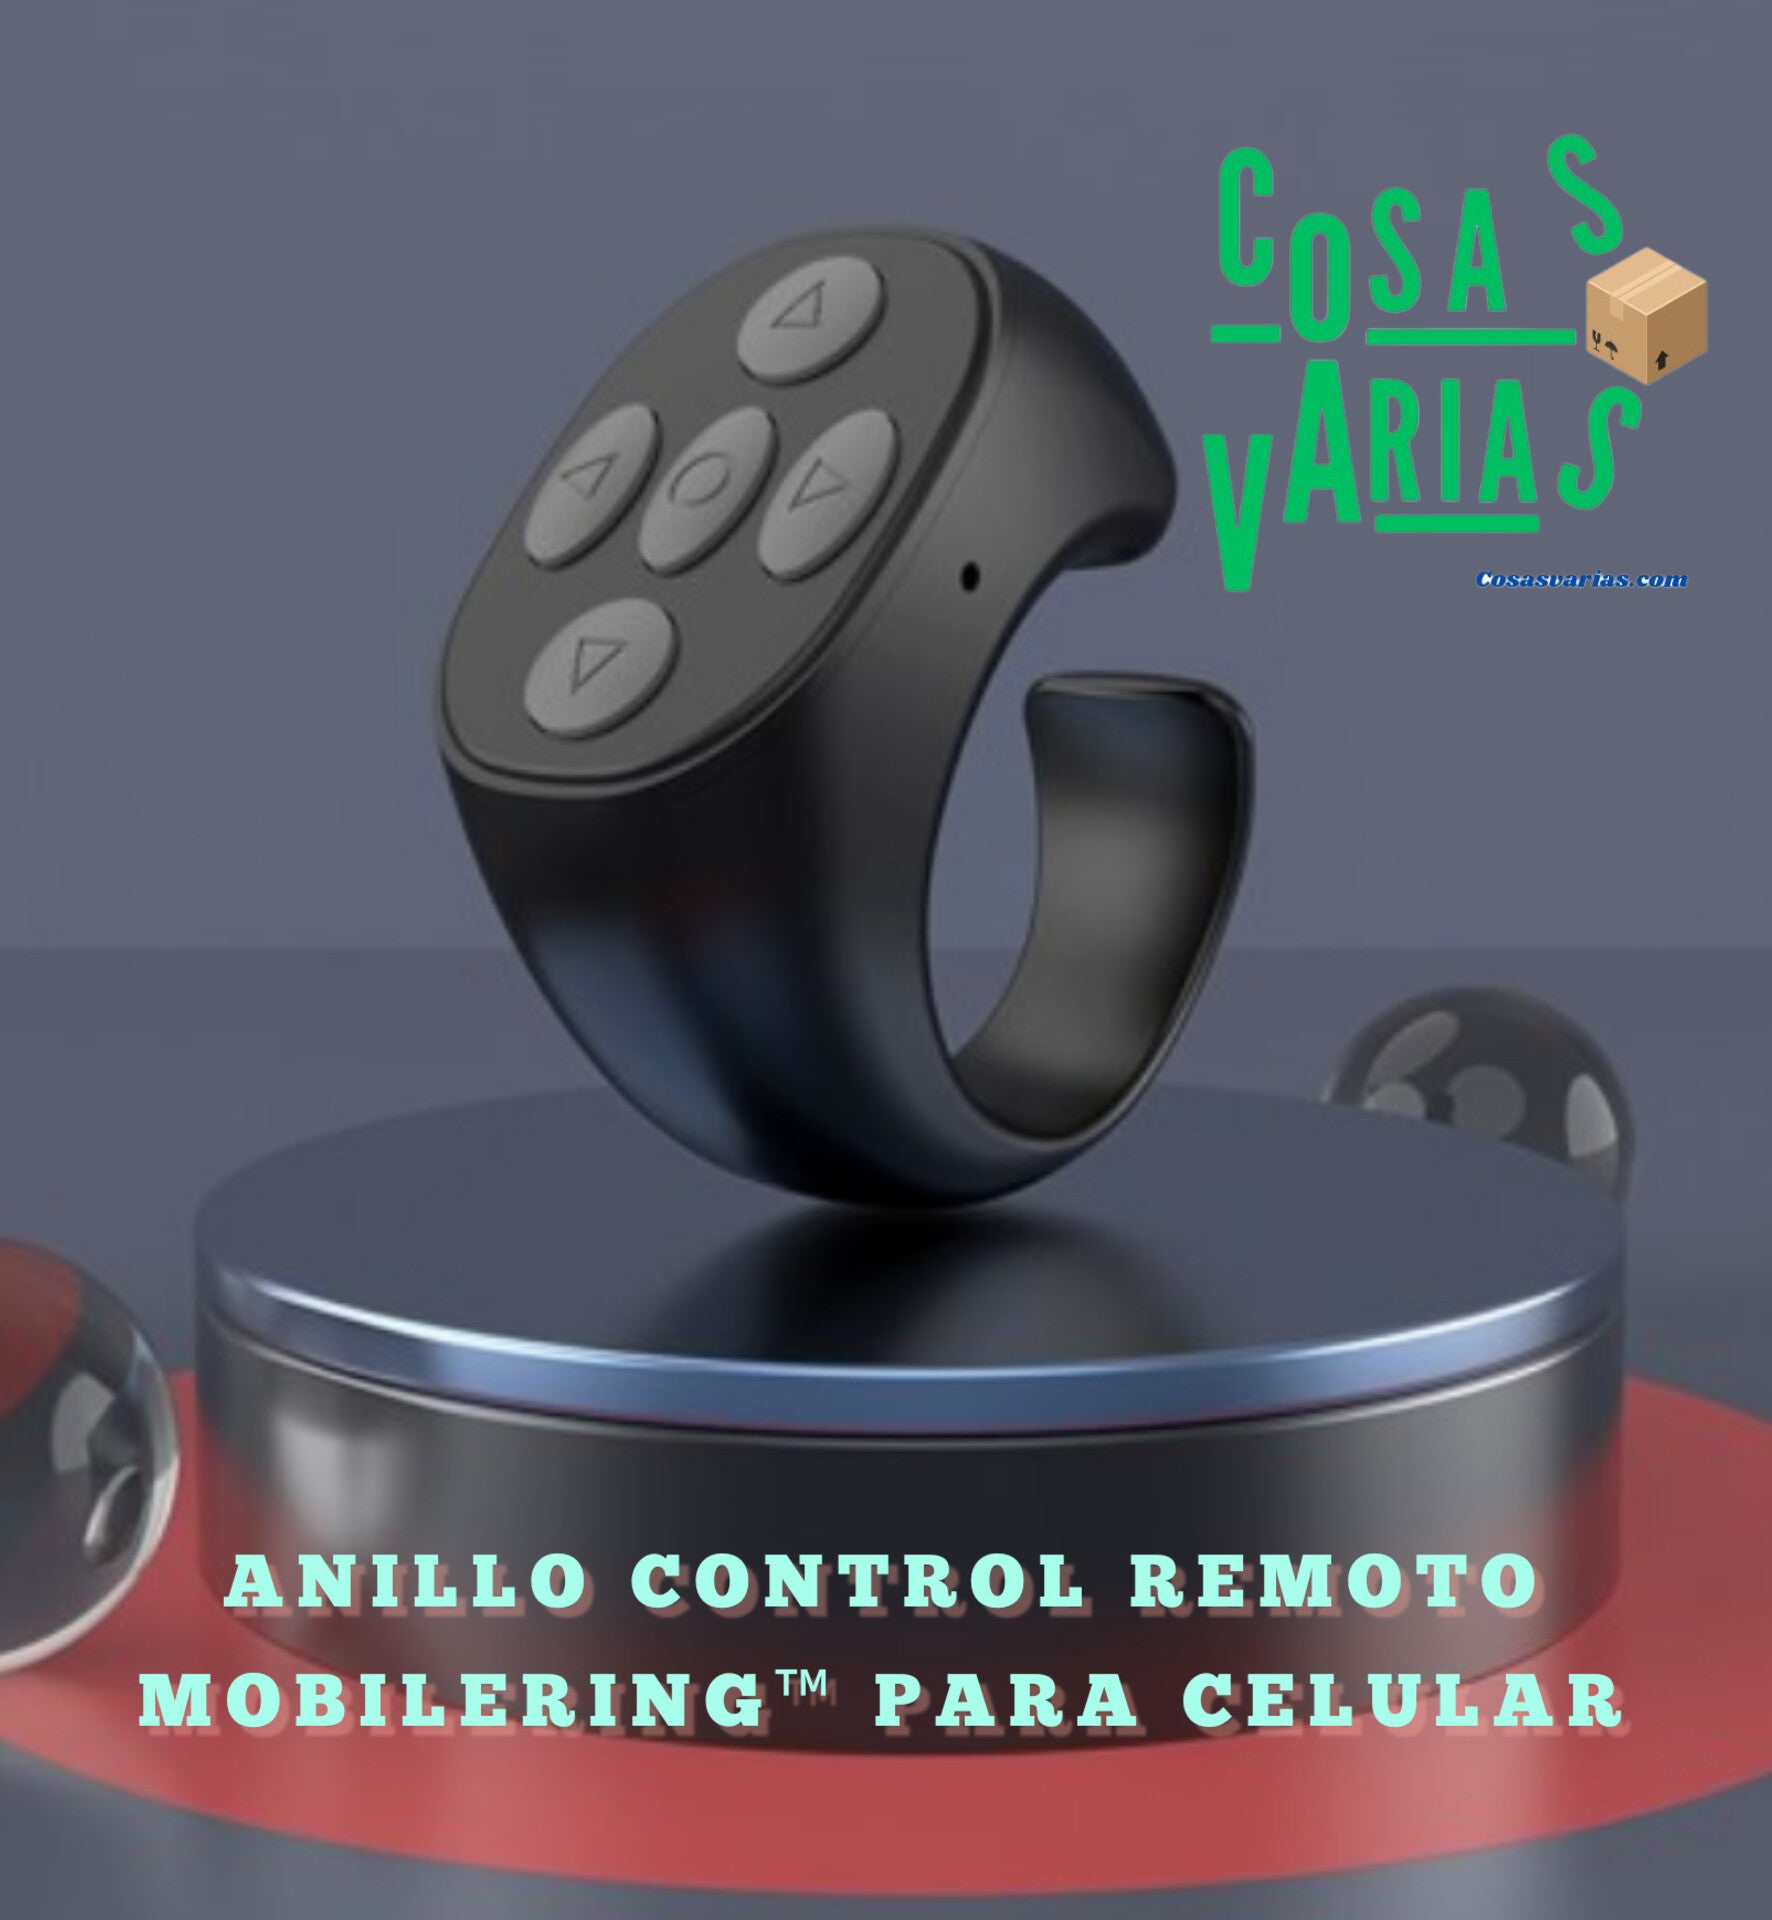 Anillo control remoto MobileRing™  para celular